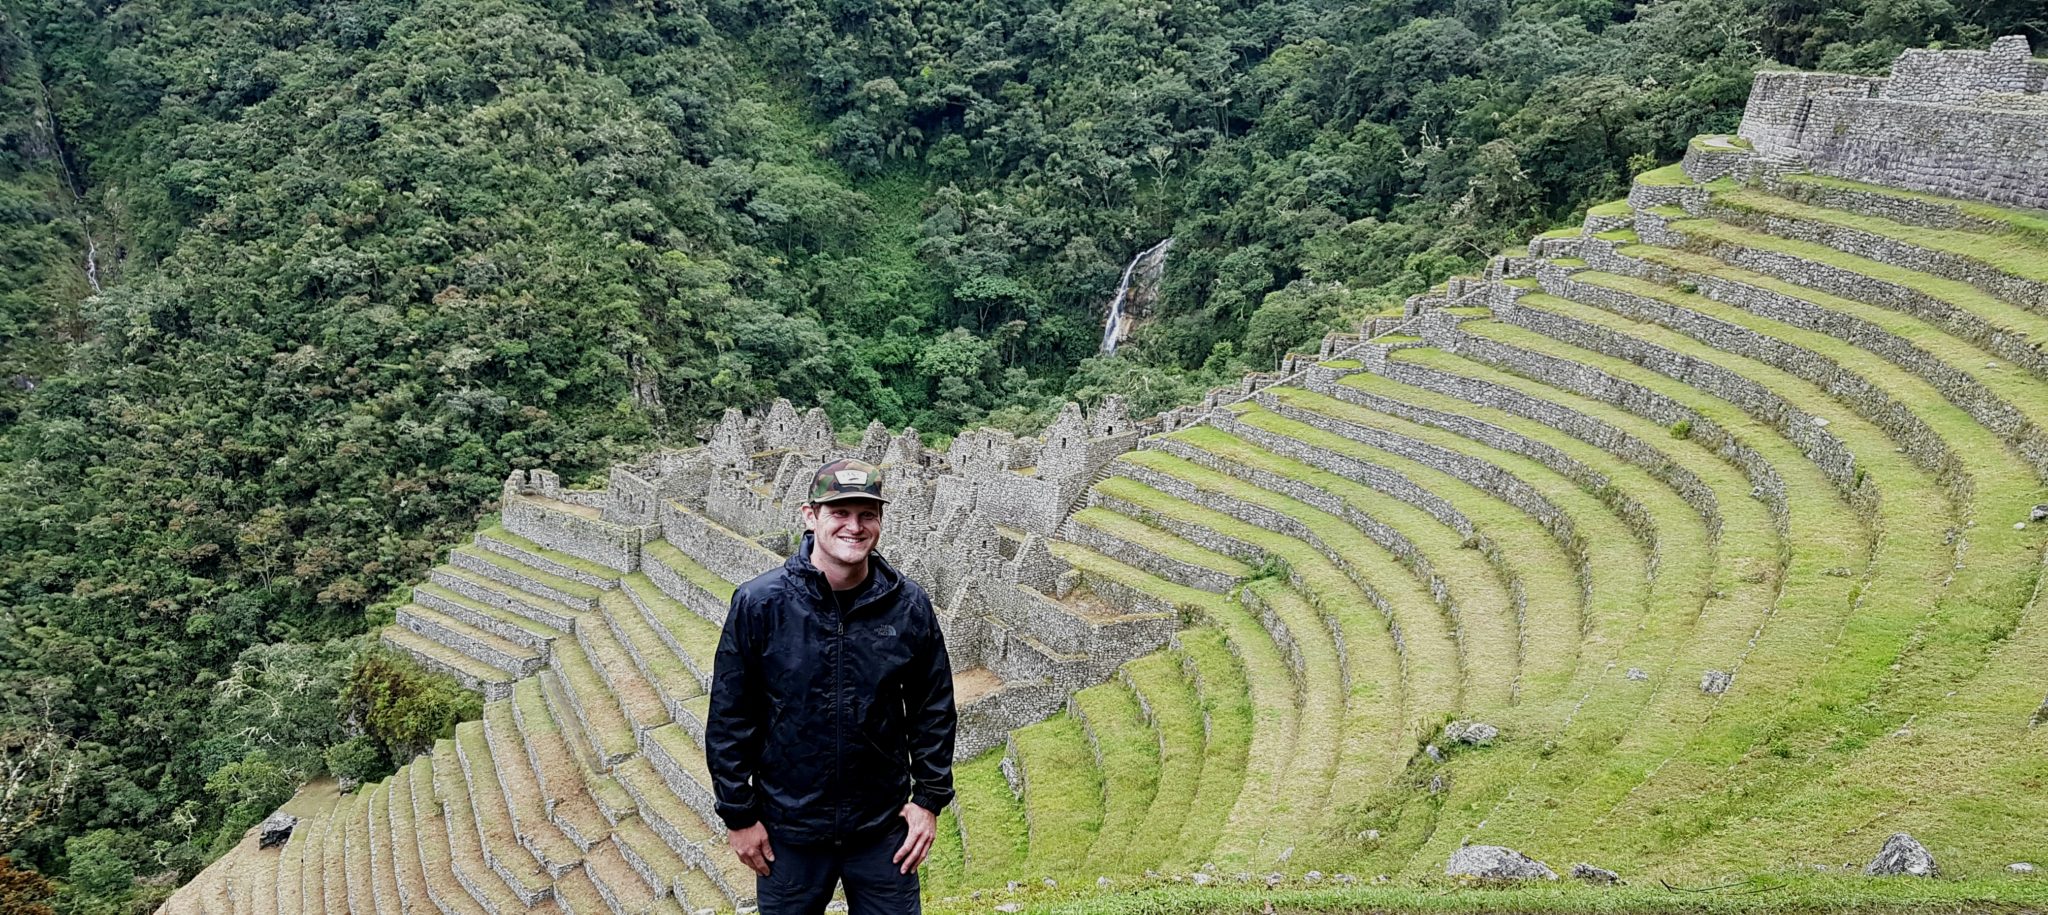 Me at Baby Machu Picchu